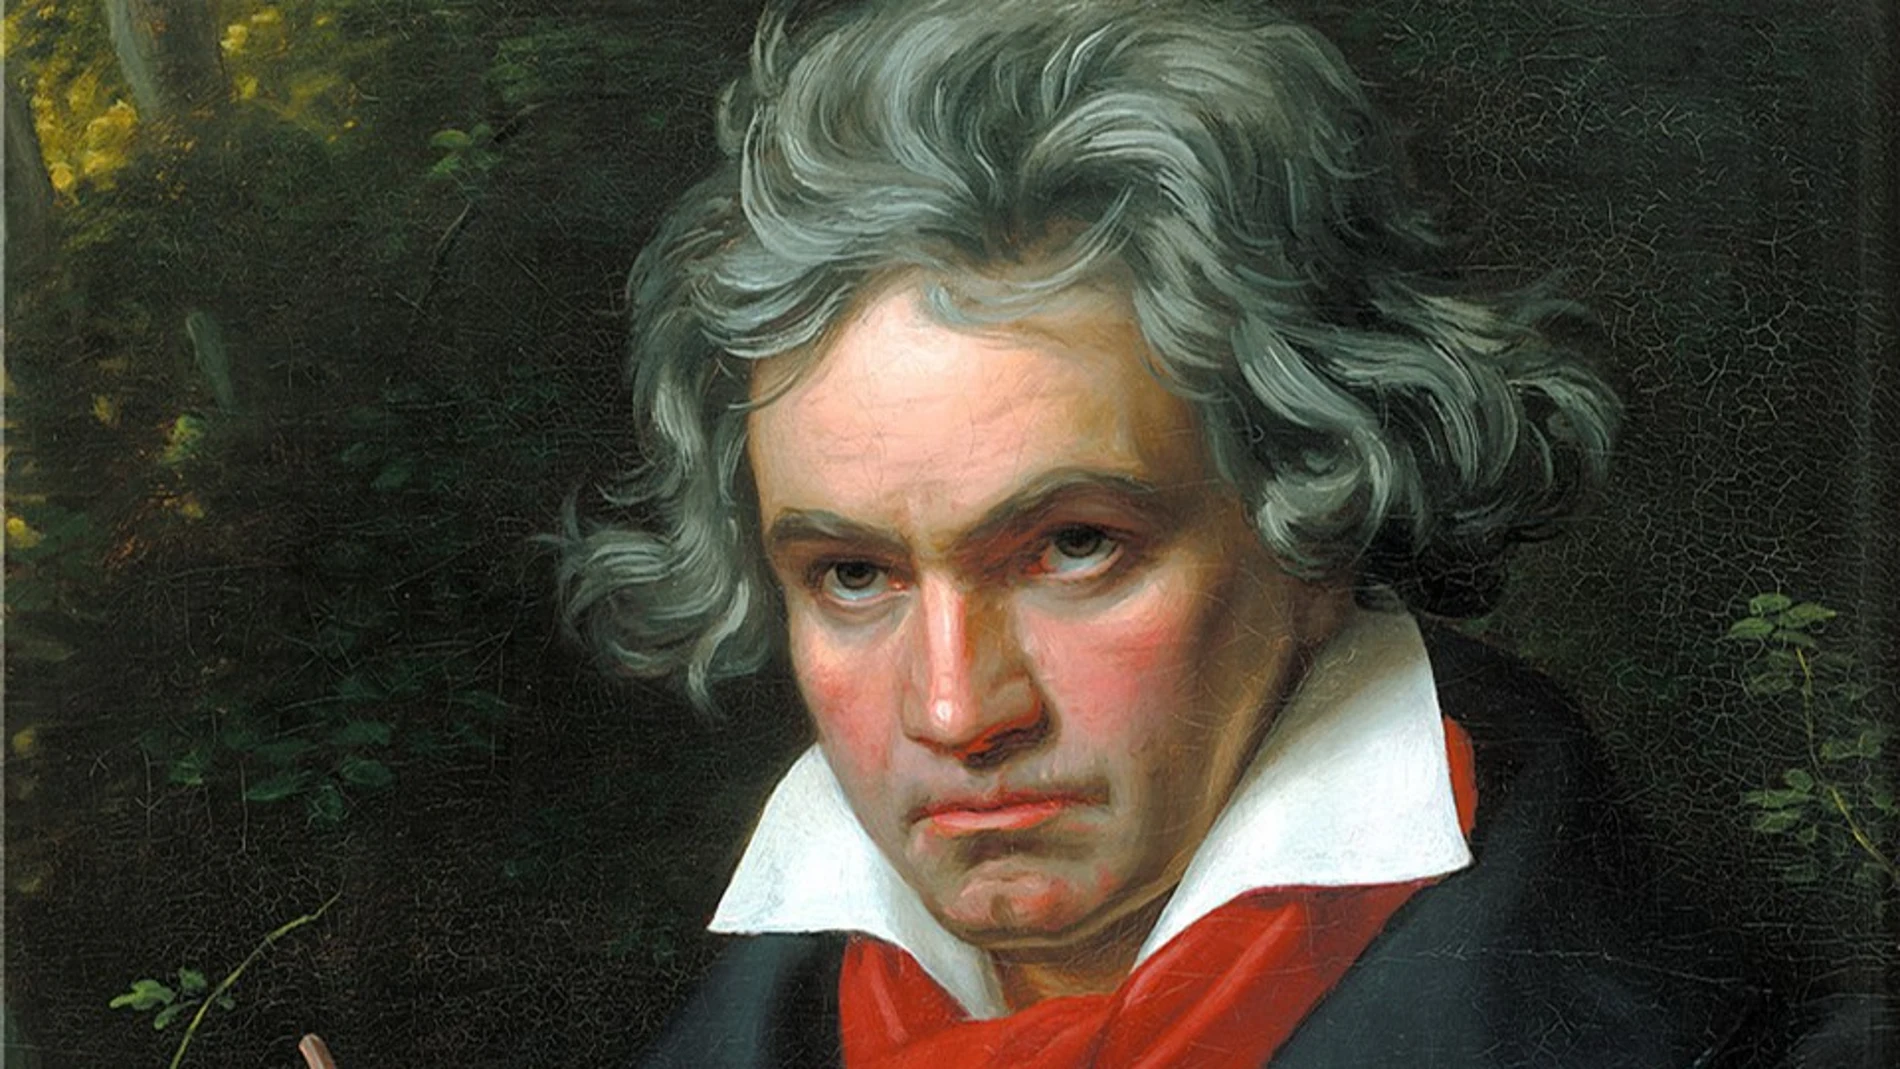 Retrato de Ludwig van Beethoven componiendo su Missa Solemnis (1820)